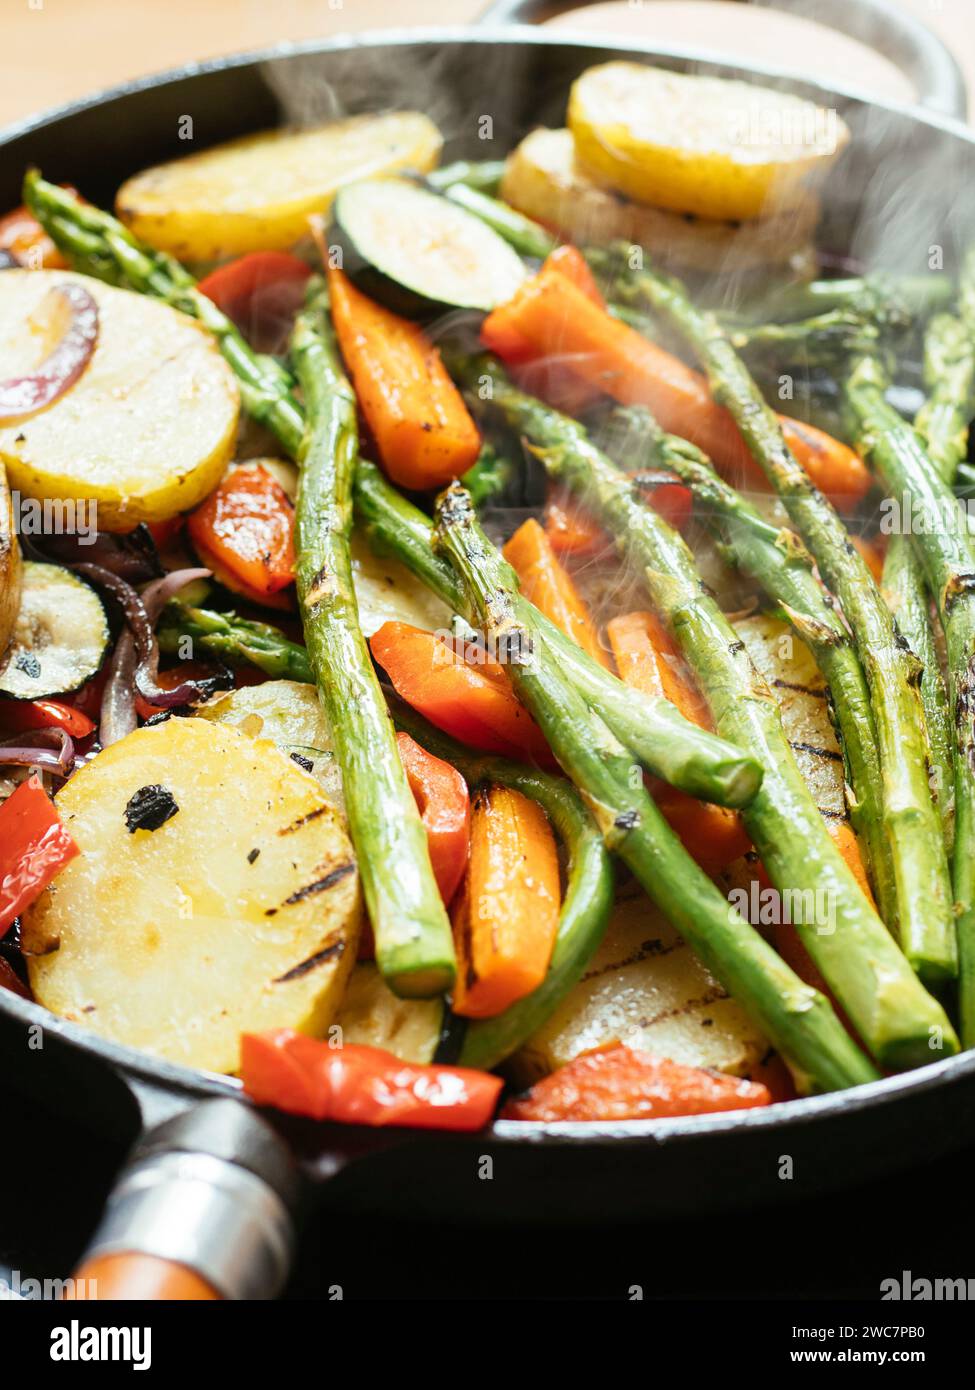 Un mélange de légumes (asperges, courgettes, poivrons, carottes, oignons, pommes de terre) d'être grillés dans une poêle en fonte. Banque D'Images